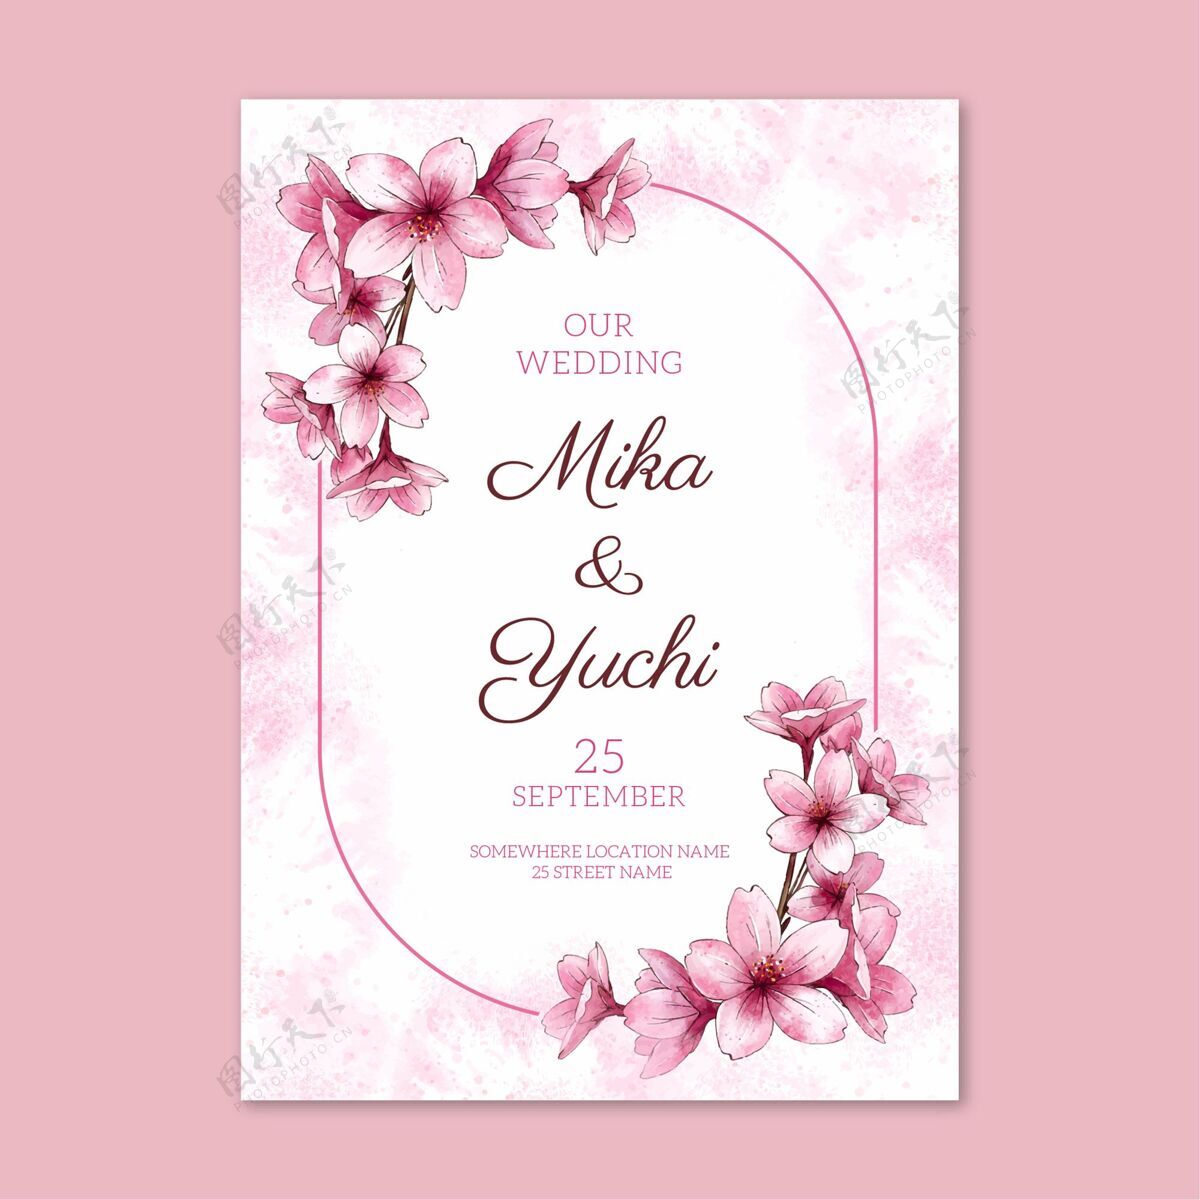 请柬带有花卉图案的结婚卡请柬设计模板庆典活动准备打印